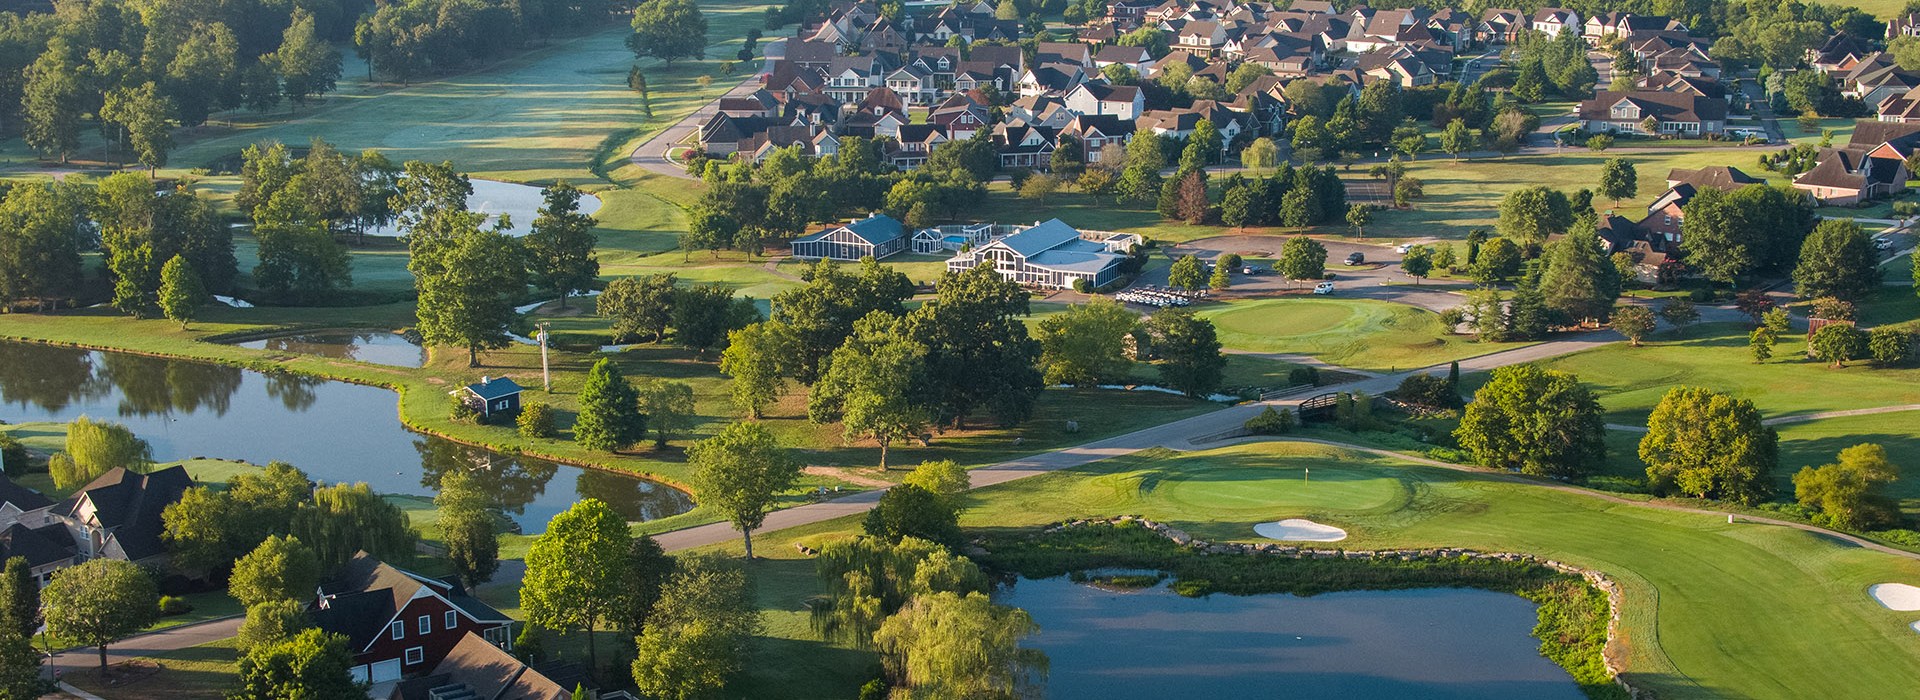 golf course birds eye view